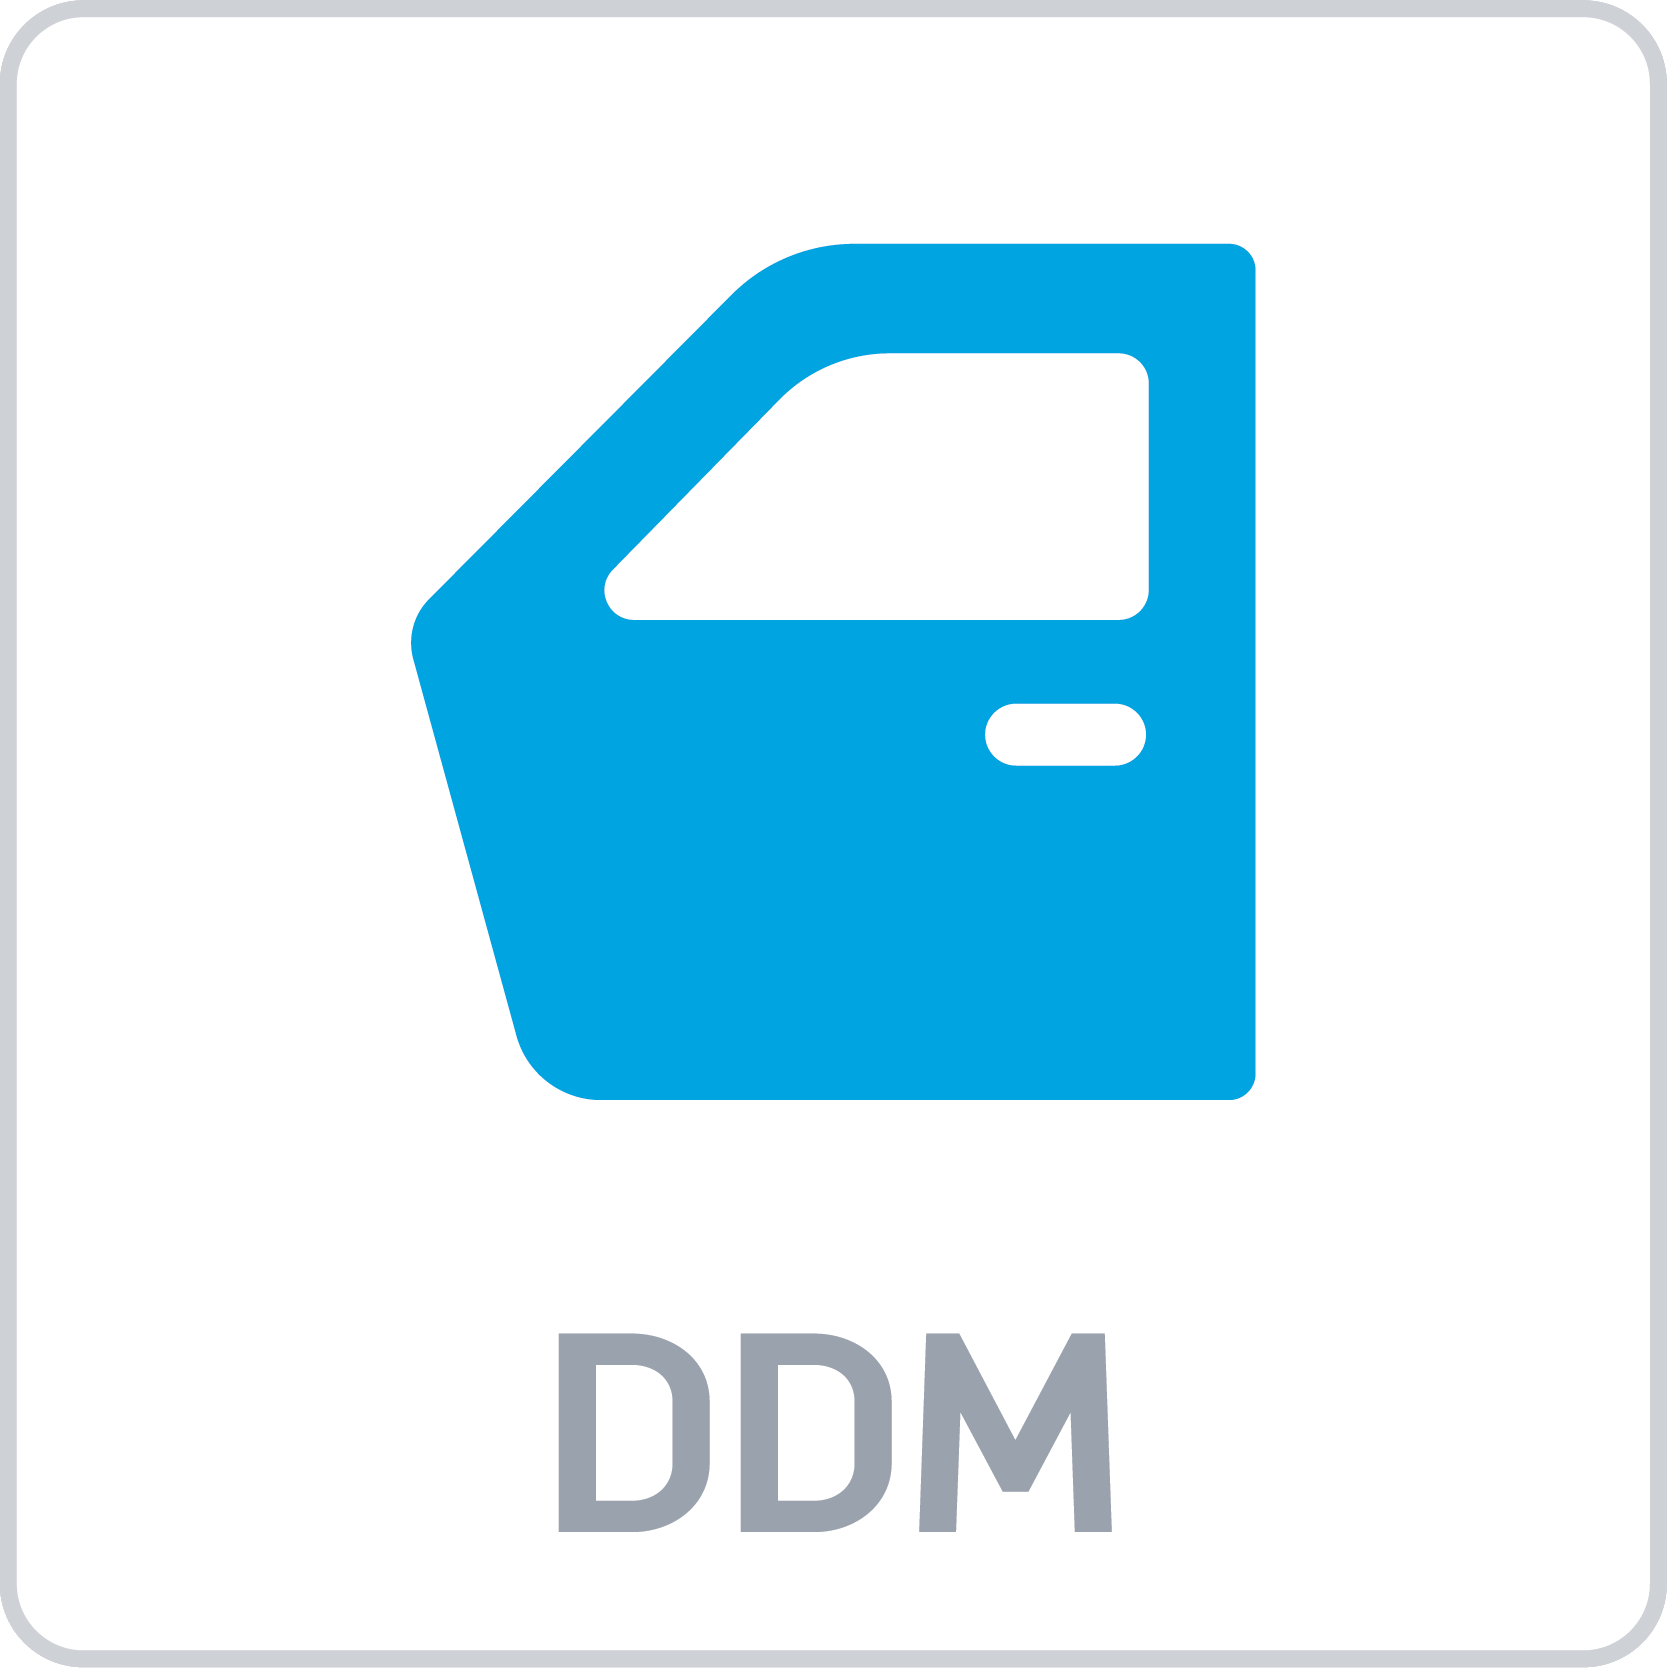 GM Driver Door Module (DDM)